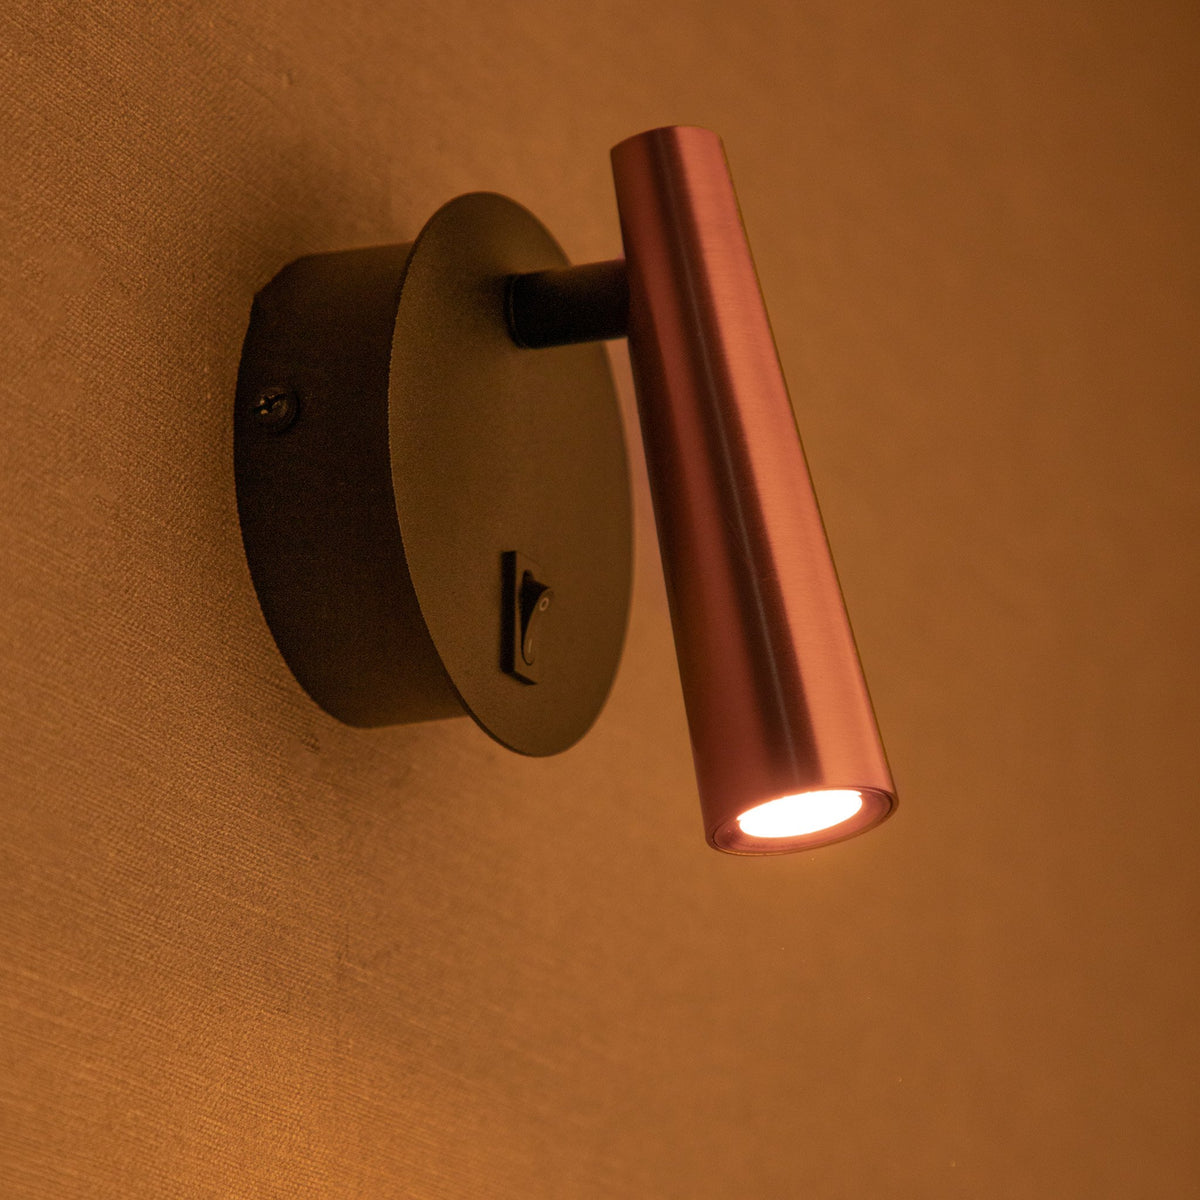 Buy Swing Me Copper LED Light online